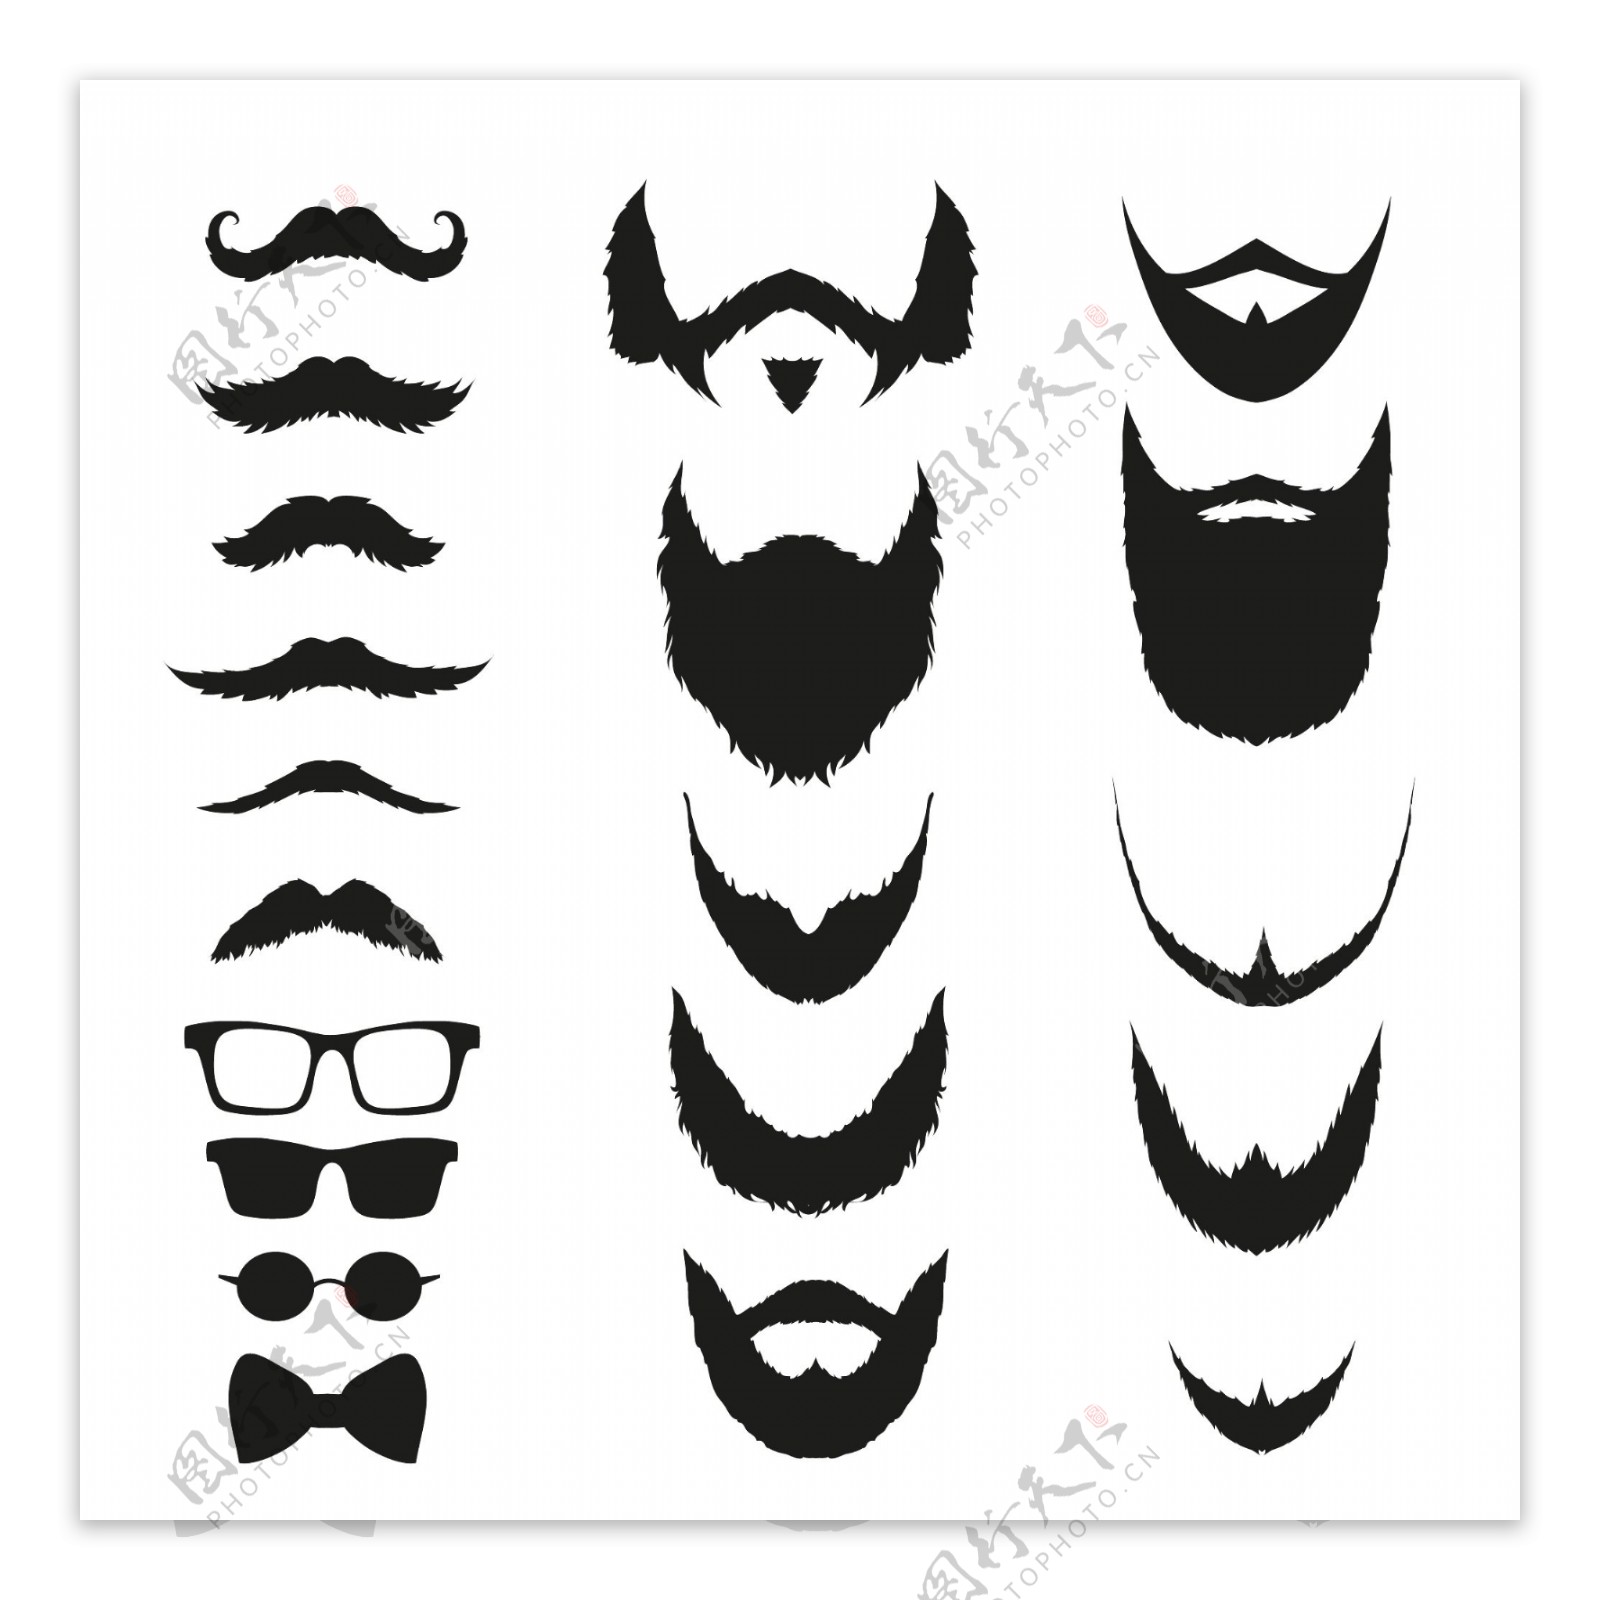 发型胡子和头发黑白照片集合 向量例证. 插画 包括有 理发, 成人, 头发, 设计, 胡子, 装饰, 男性 - 79369348